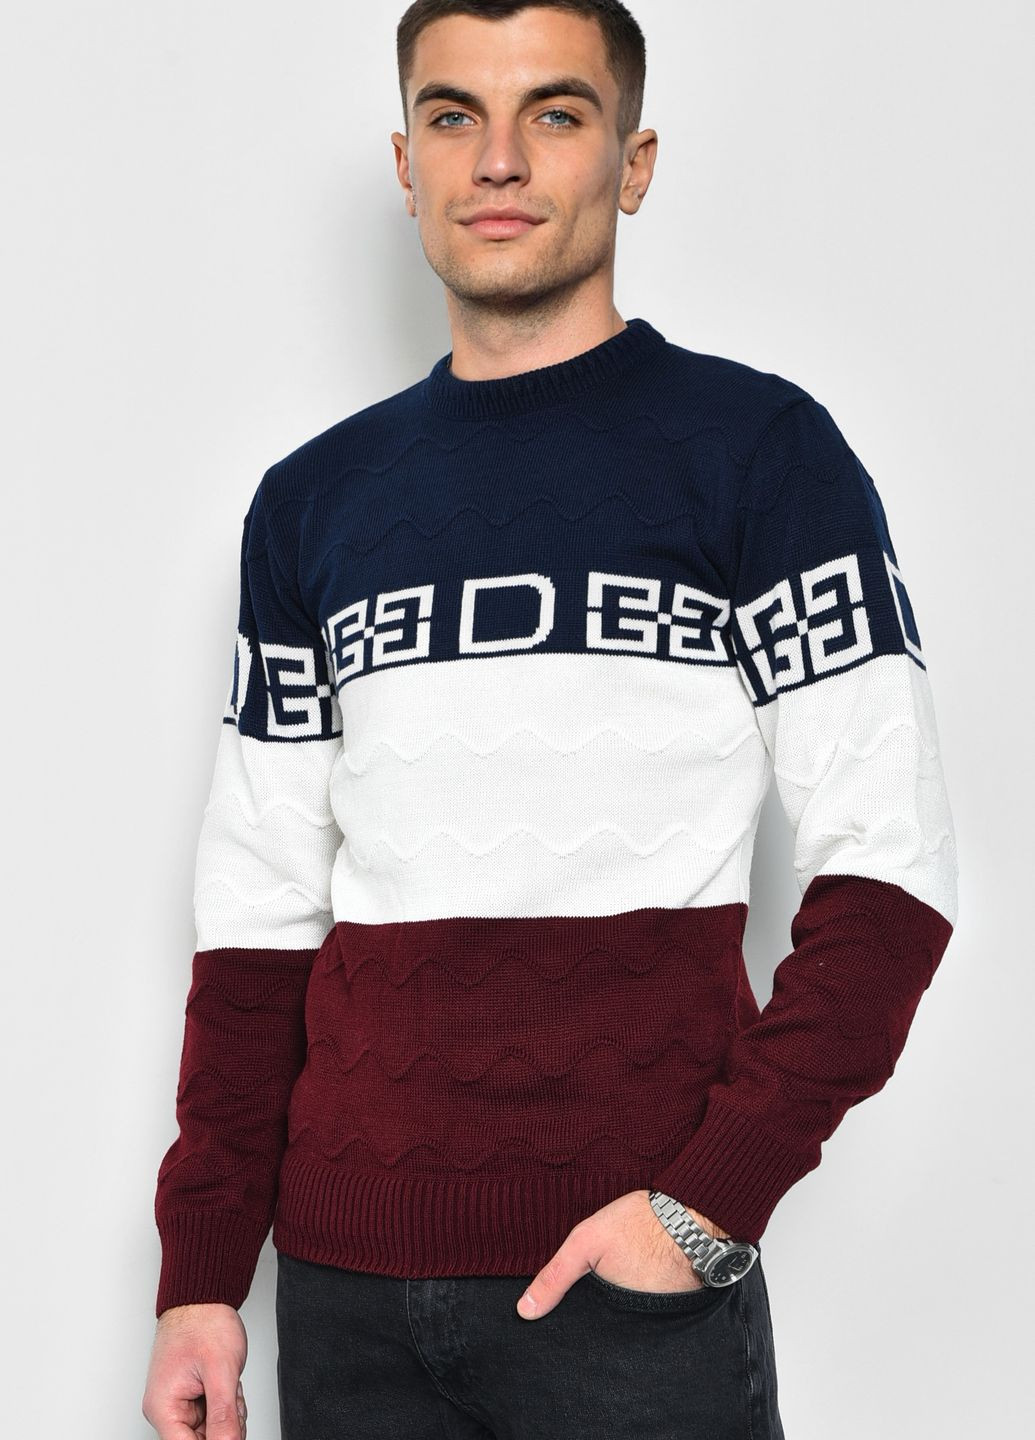 Синий демисезонный свитер мужской однотонный синего цвета пуловер Let's Shop